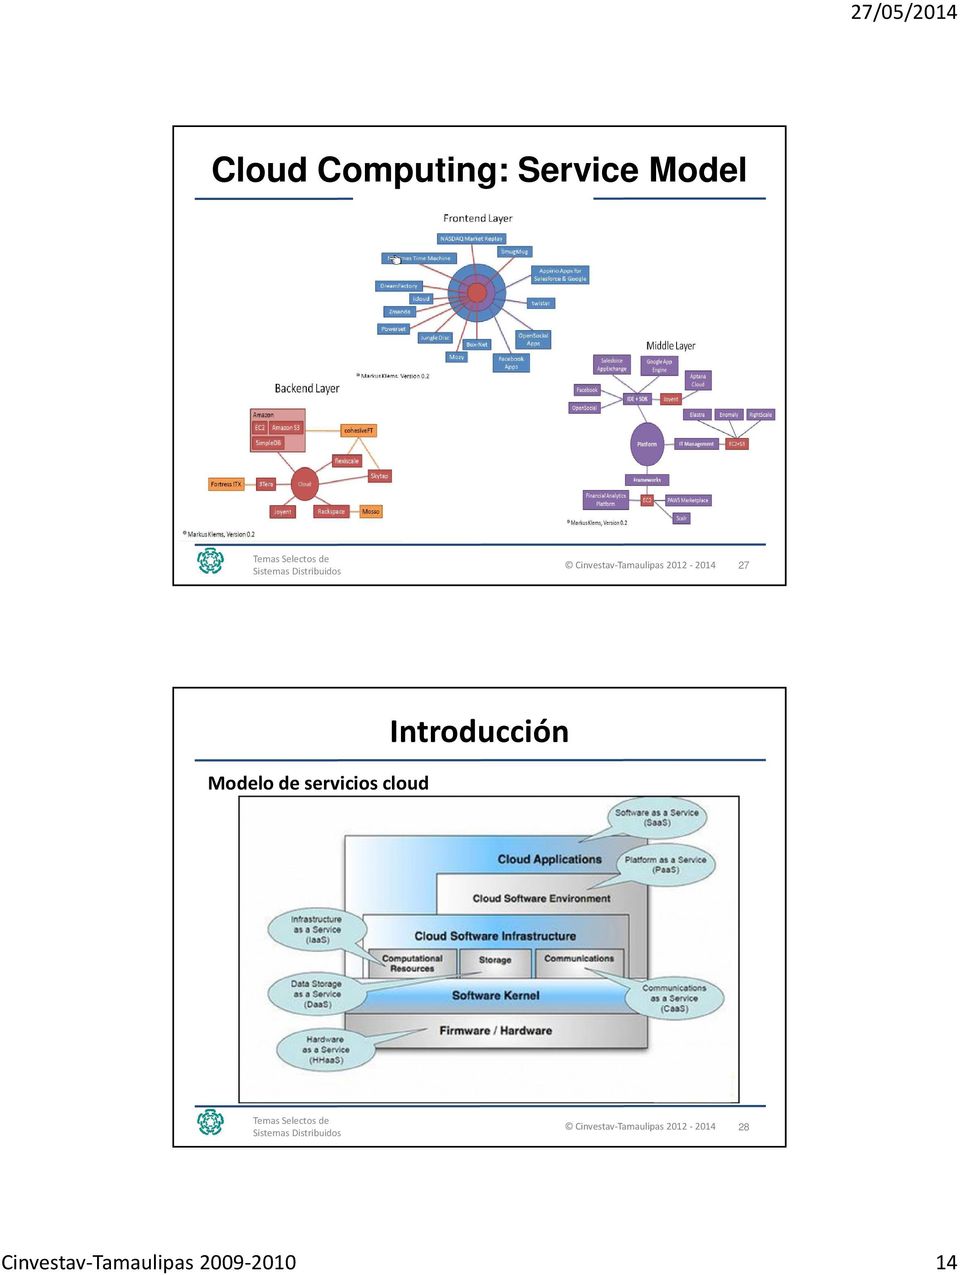 Modelo de servicios cloud